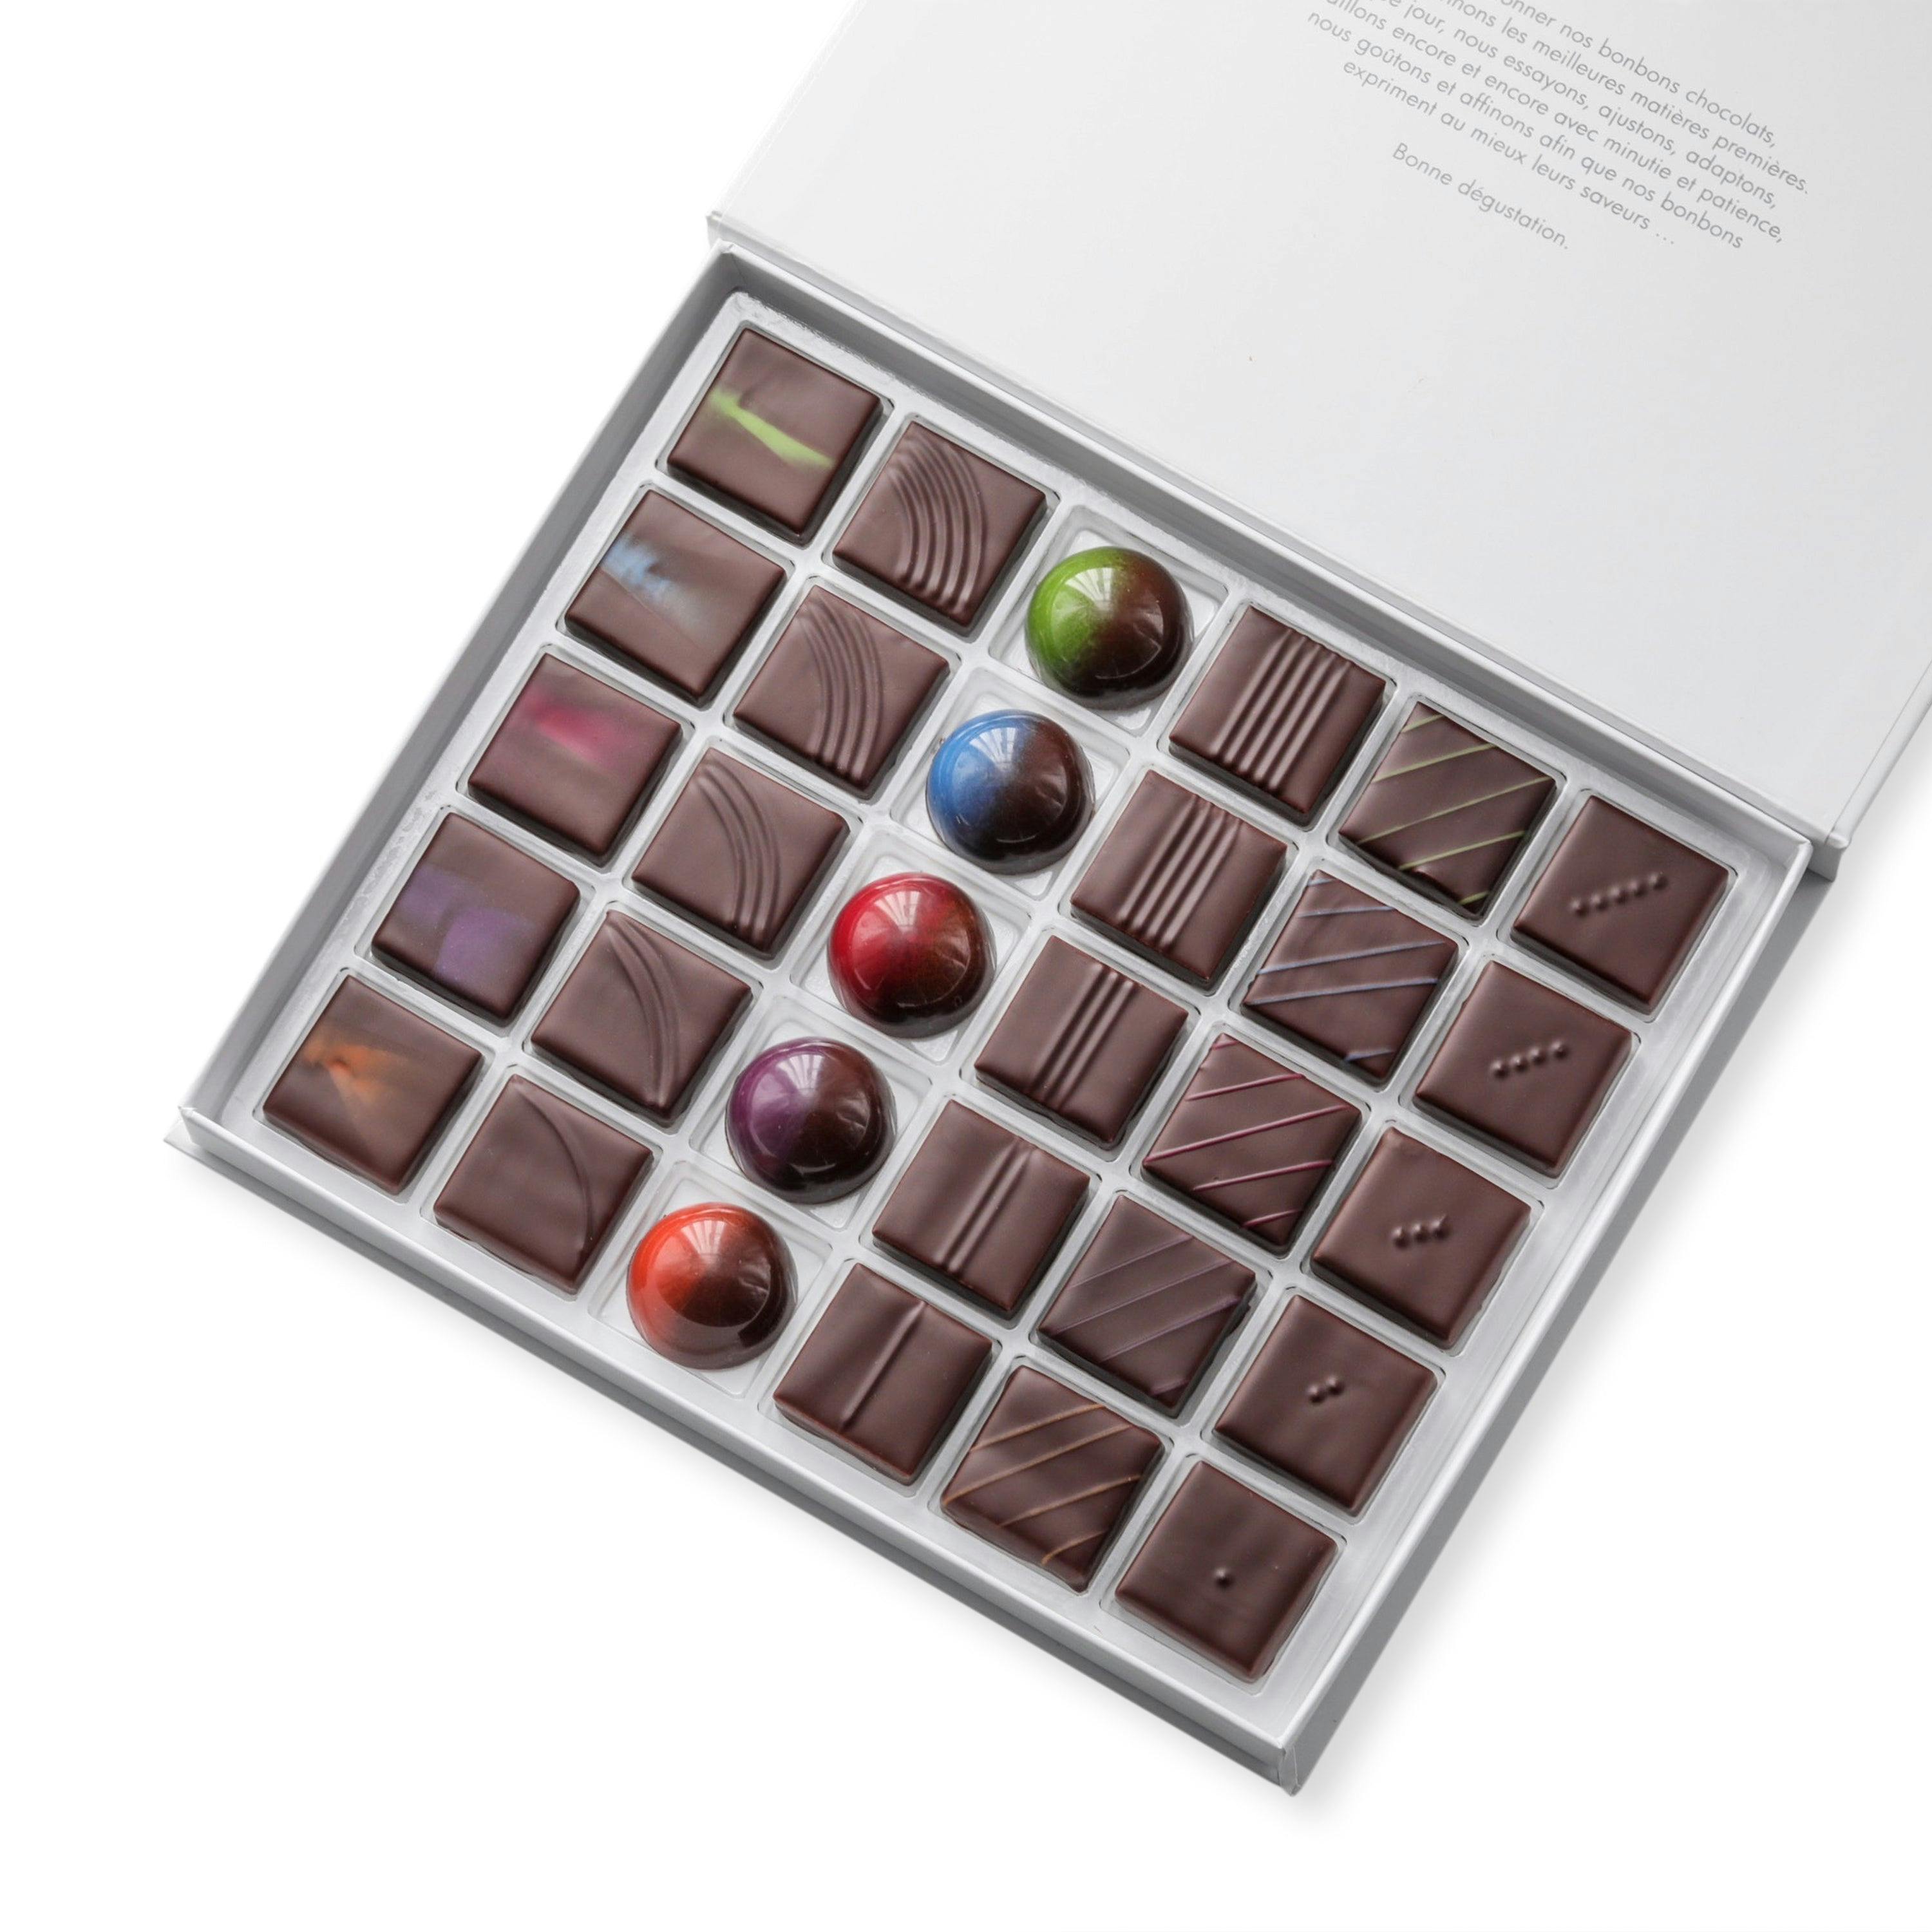 Coffret signature disponible en coffrets de 30/60 chocolats - Vincent Vallée world champion chocolatier